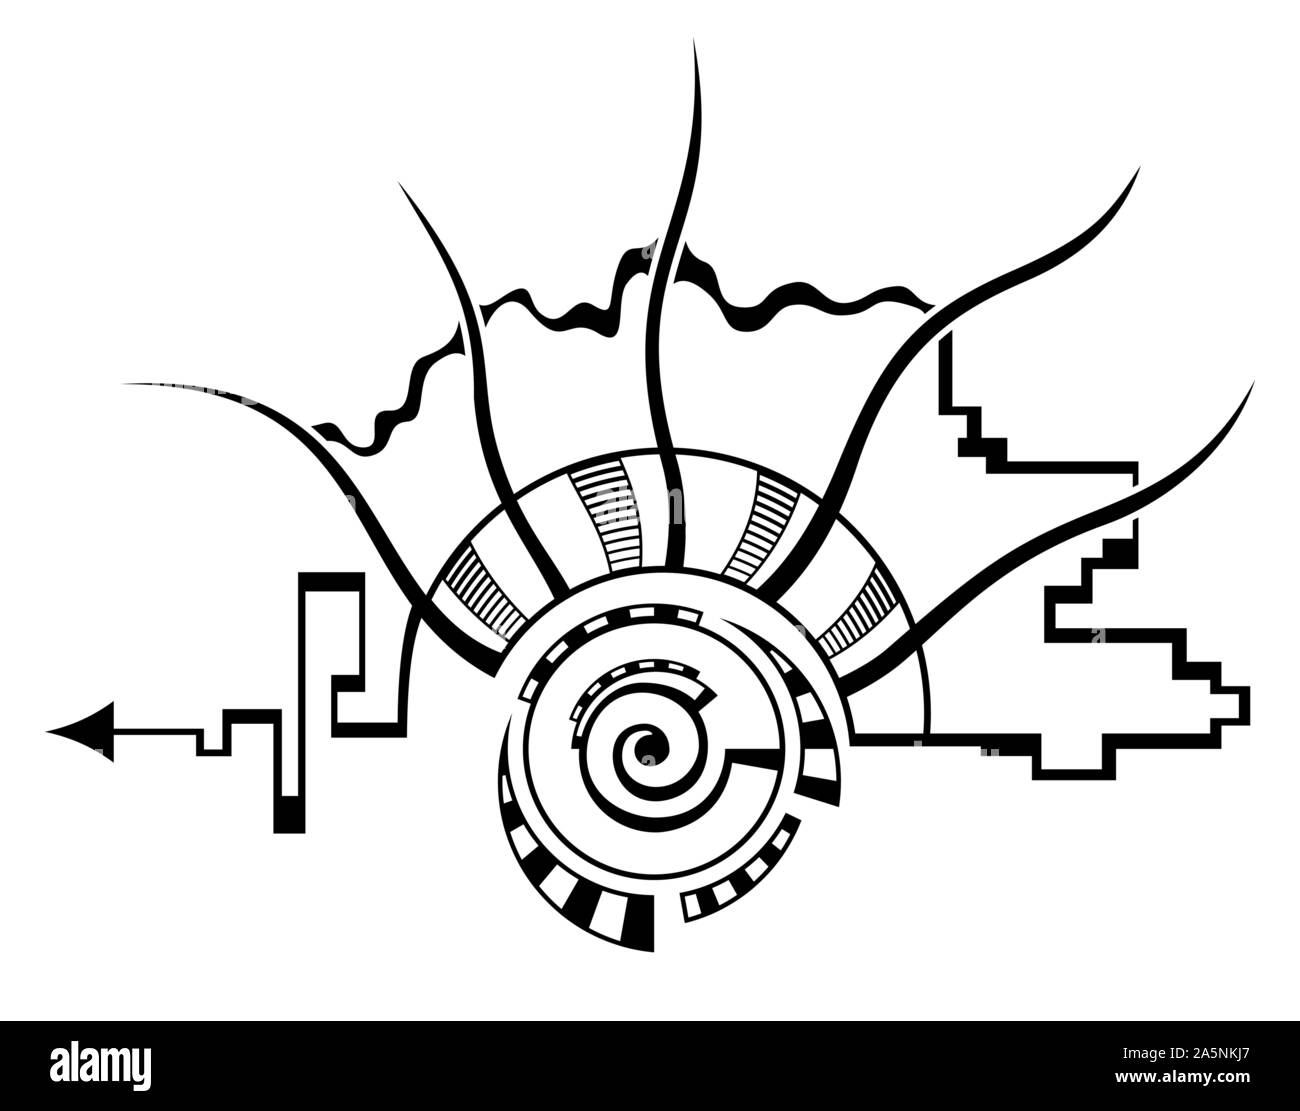 Abstrakte monochrome Illustration, auf weißem Hintergrund. Spirale, runde Form. Spirale Element mit gestrichelten Linien, segmentiert. Spirituelle Design. Stock Vektor